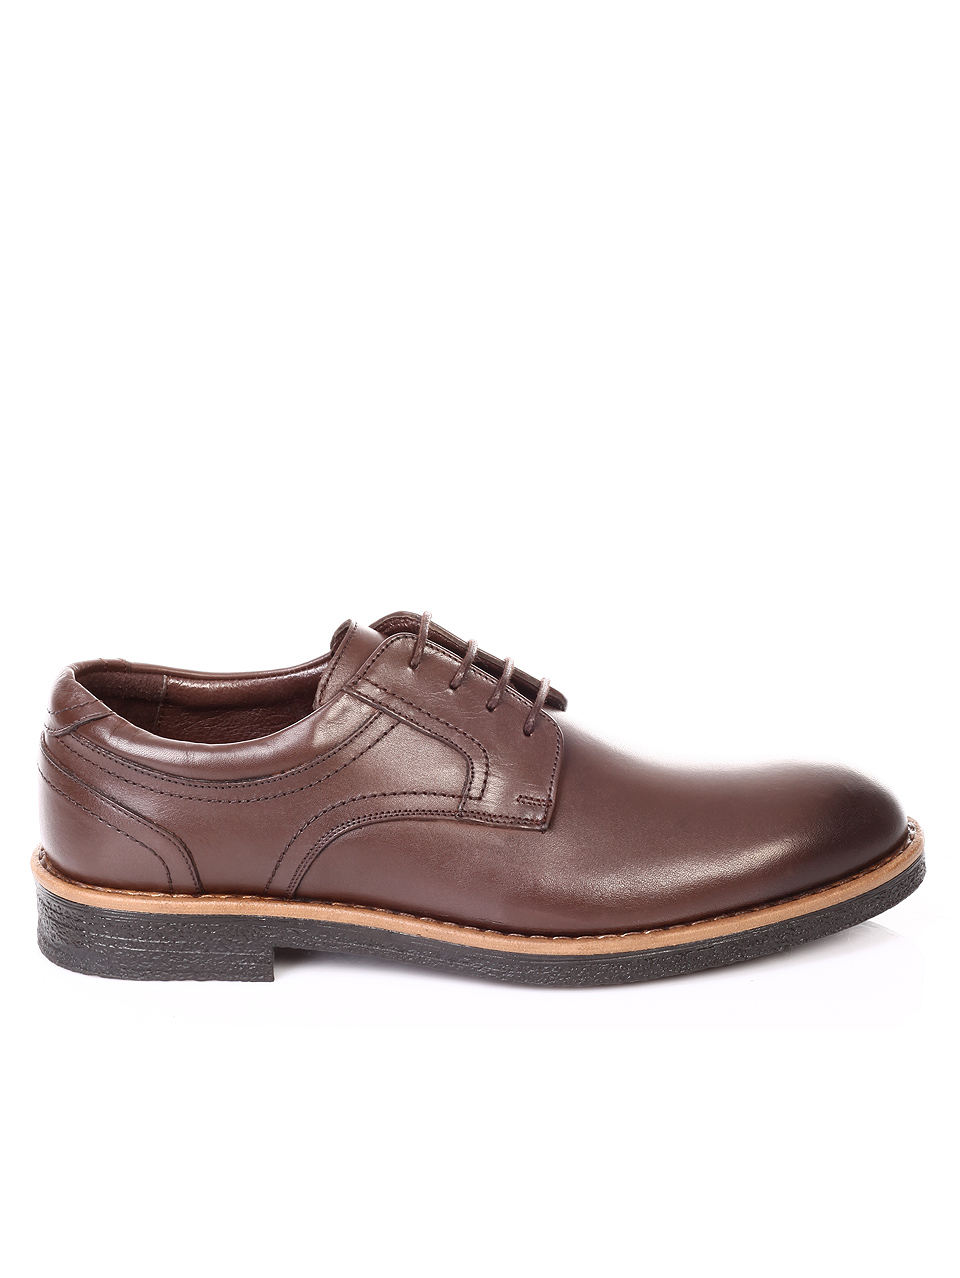 Елегантни мъжки обувки от естествена кожа 7AT-181122 brown